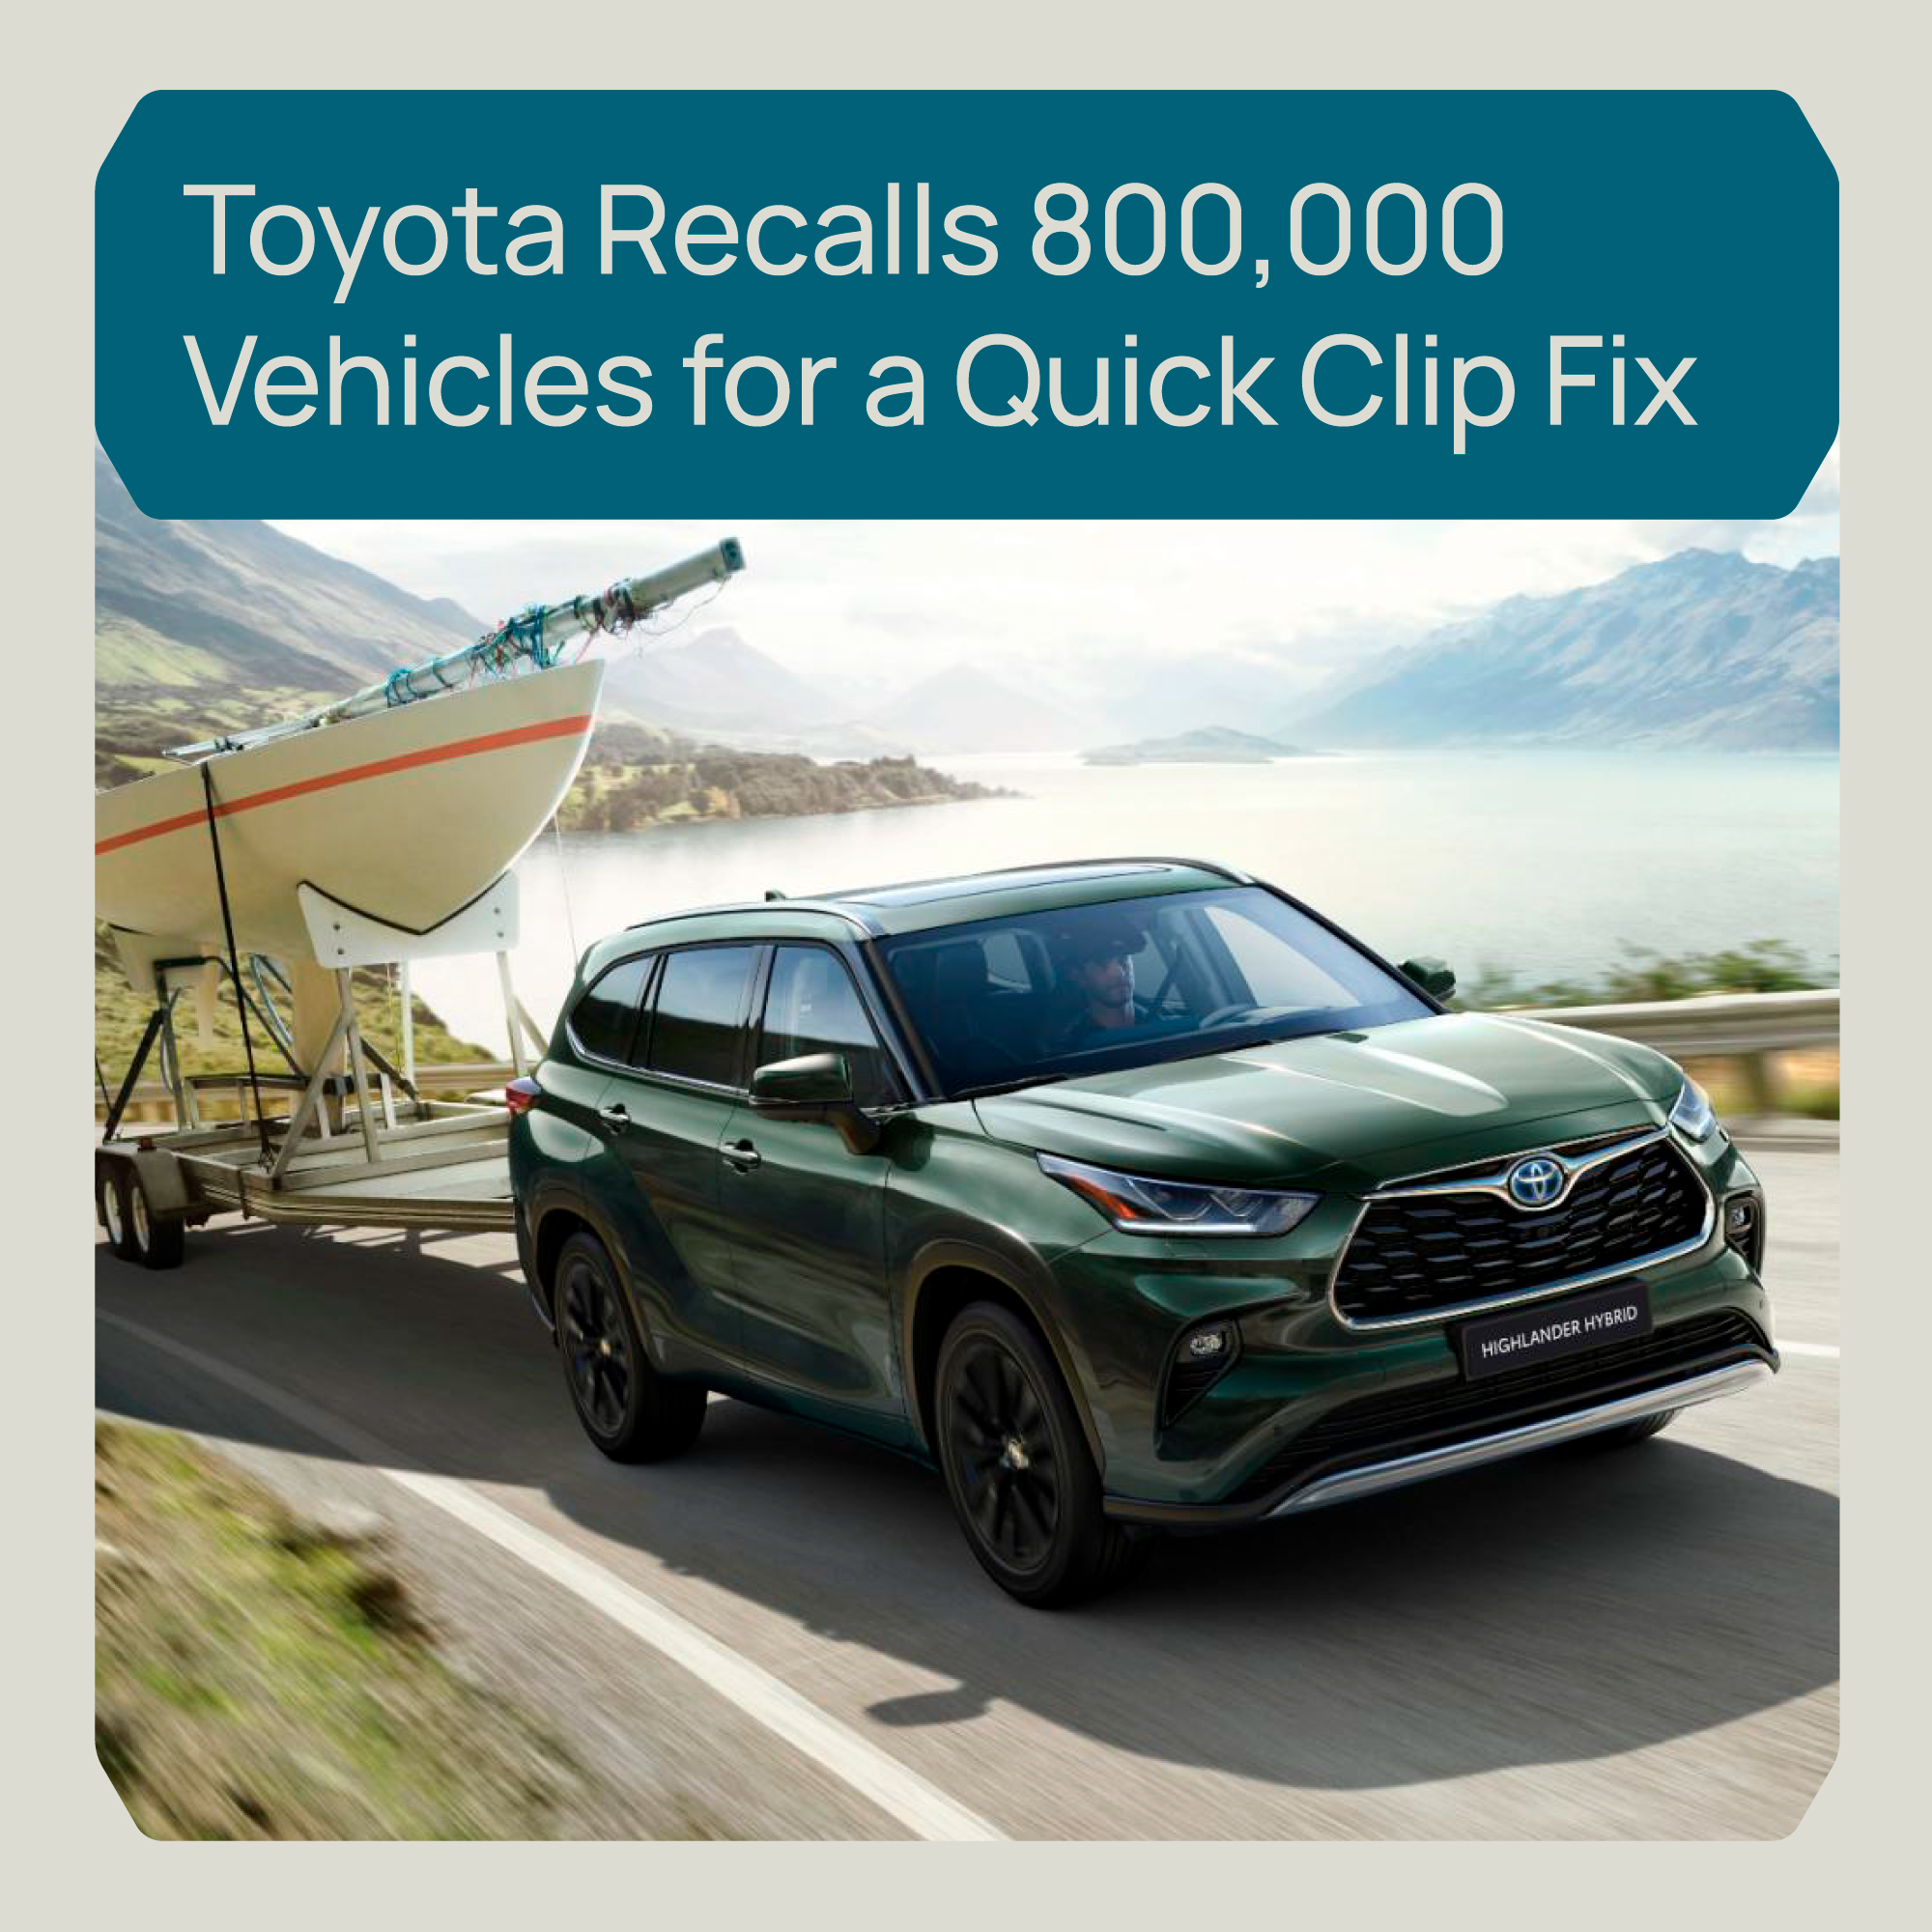 Η Toyota ανακαλεί 800.000 οχήματα για ένα γρήγορο Clip Fix